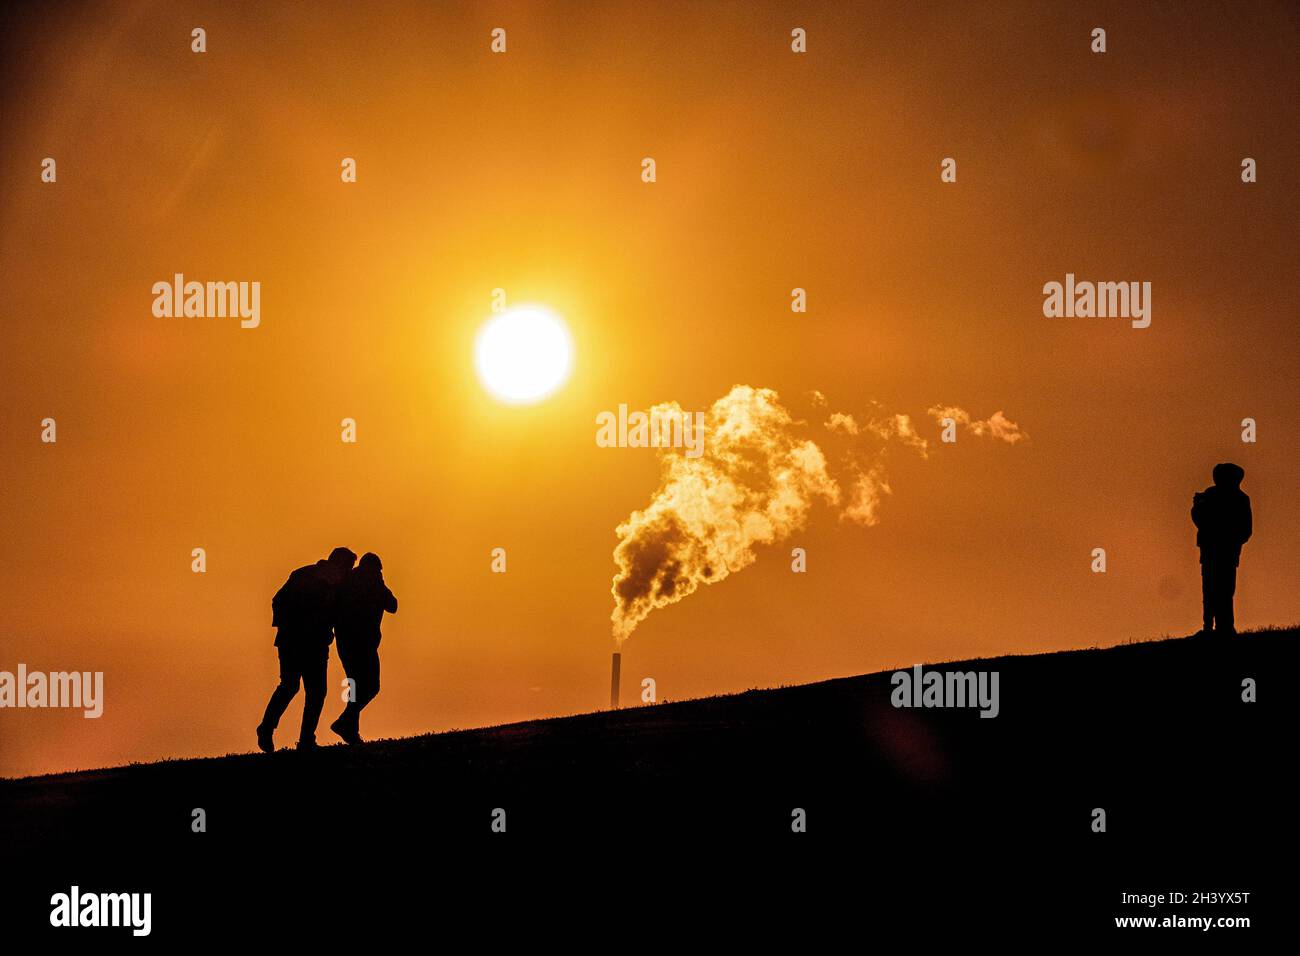 Globale Erwärmung: Eine wärmende Sonne und Dampf steigt auf, während Silhouetten von Menschen auf einem Hügel in Melbourne Australien stehen. Stockfoto